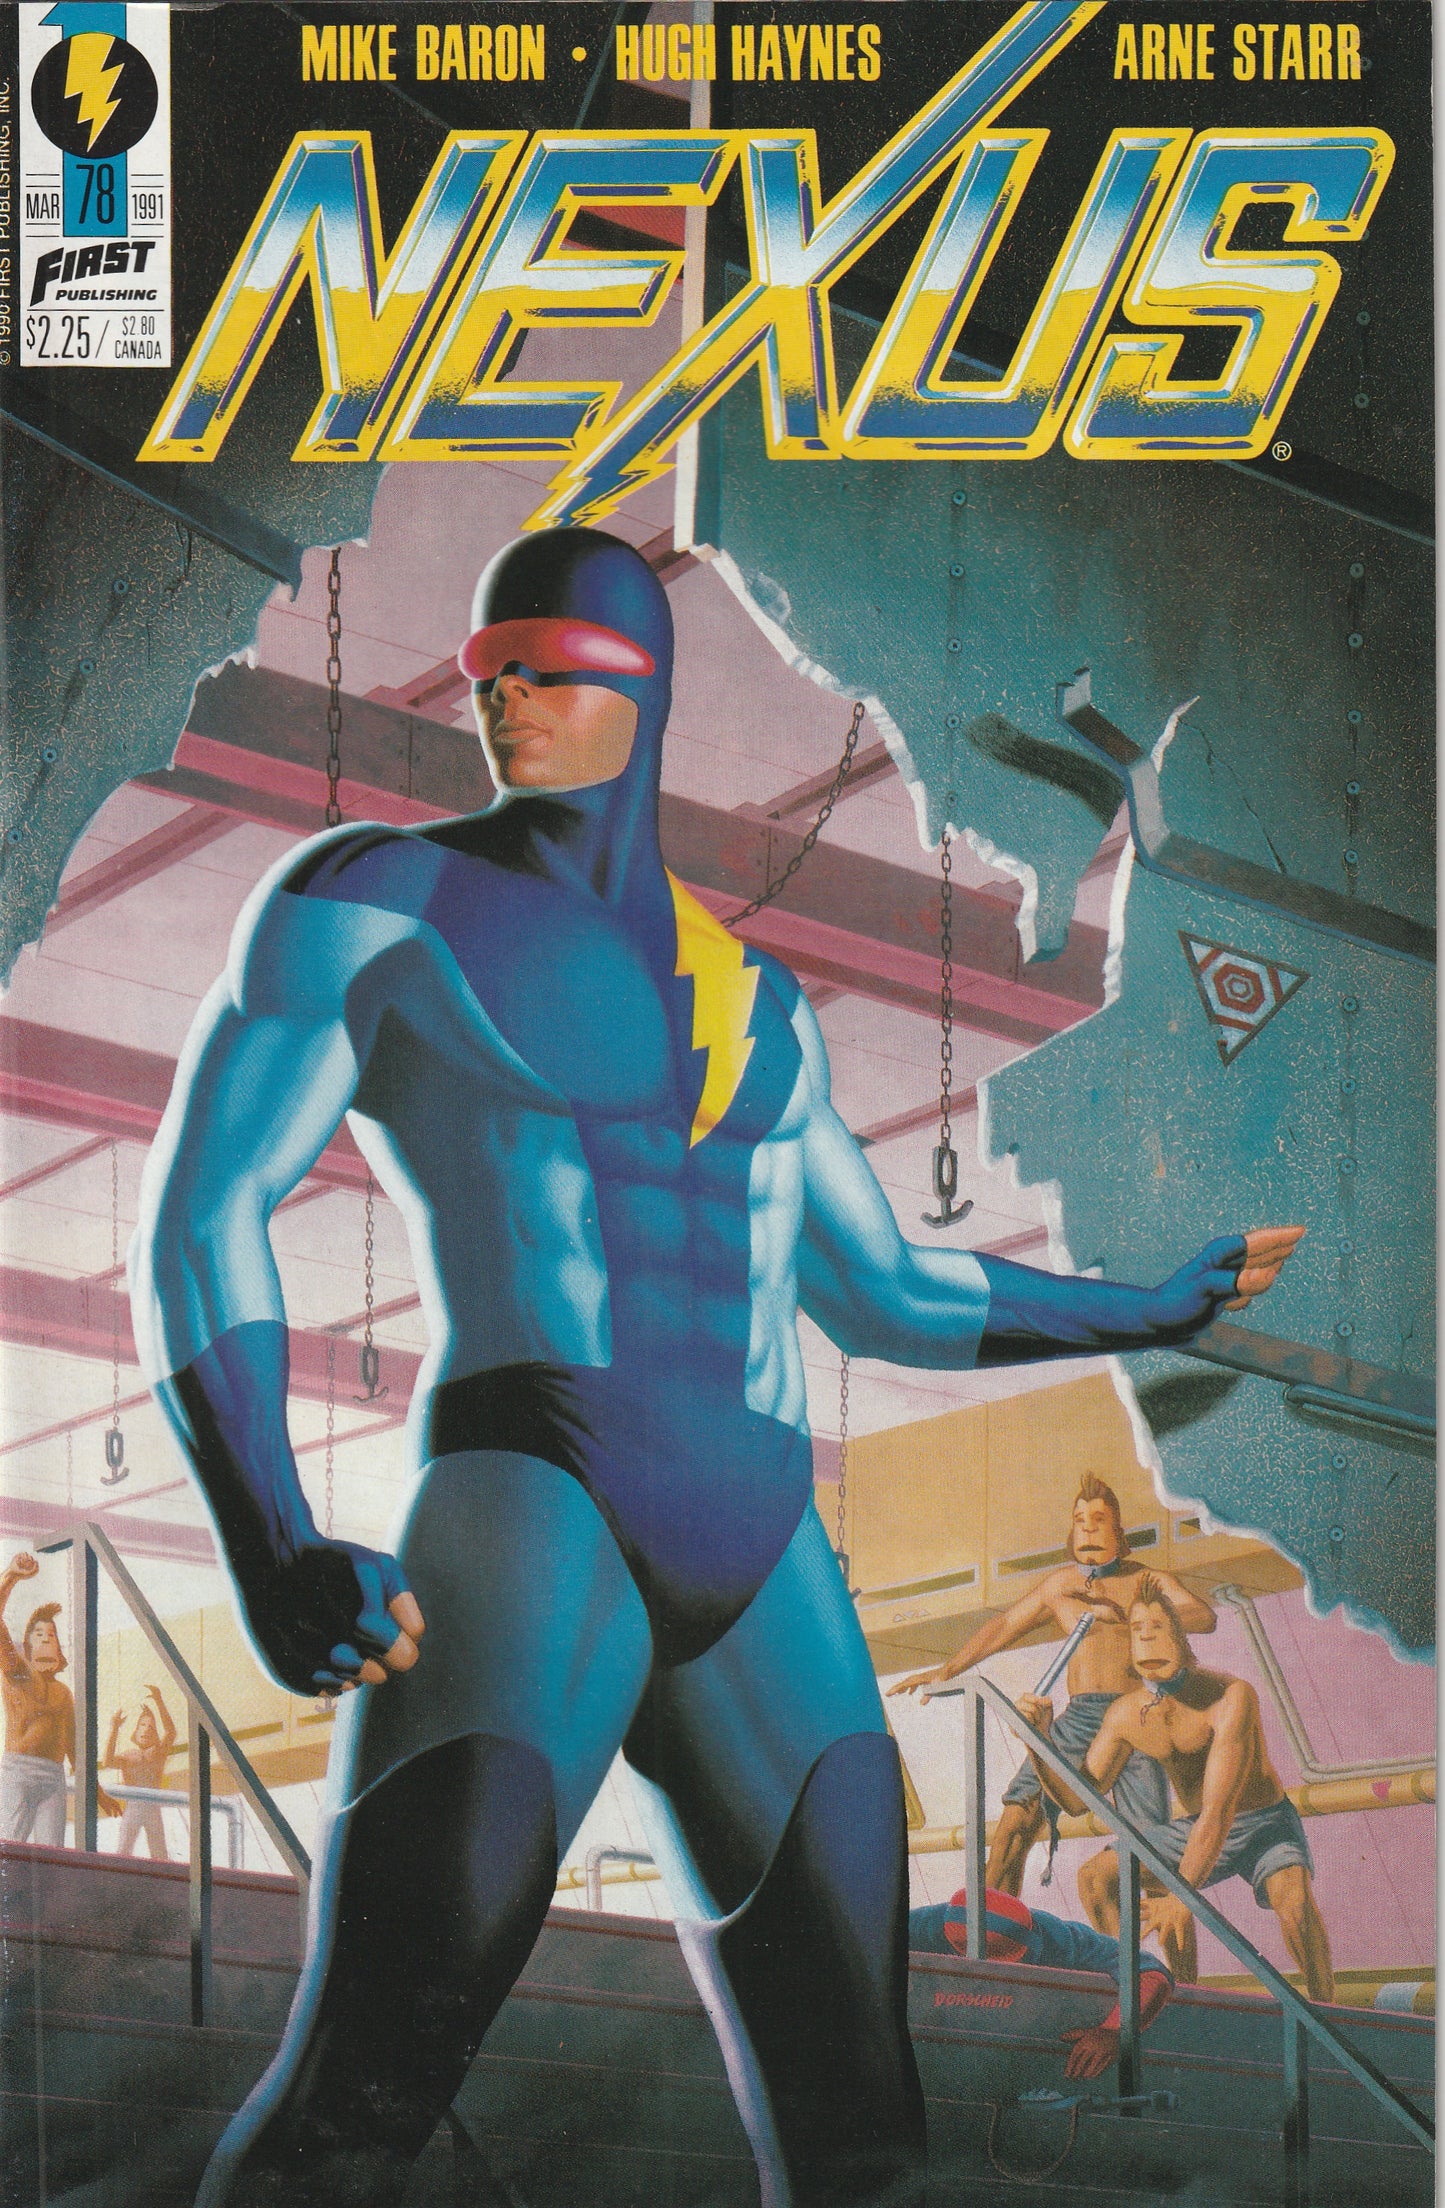 NEXUS #78 (Vol 2, 1991)